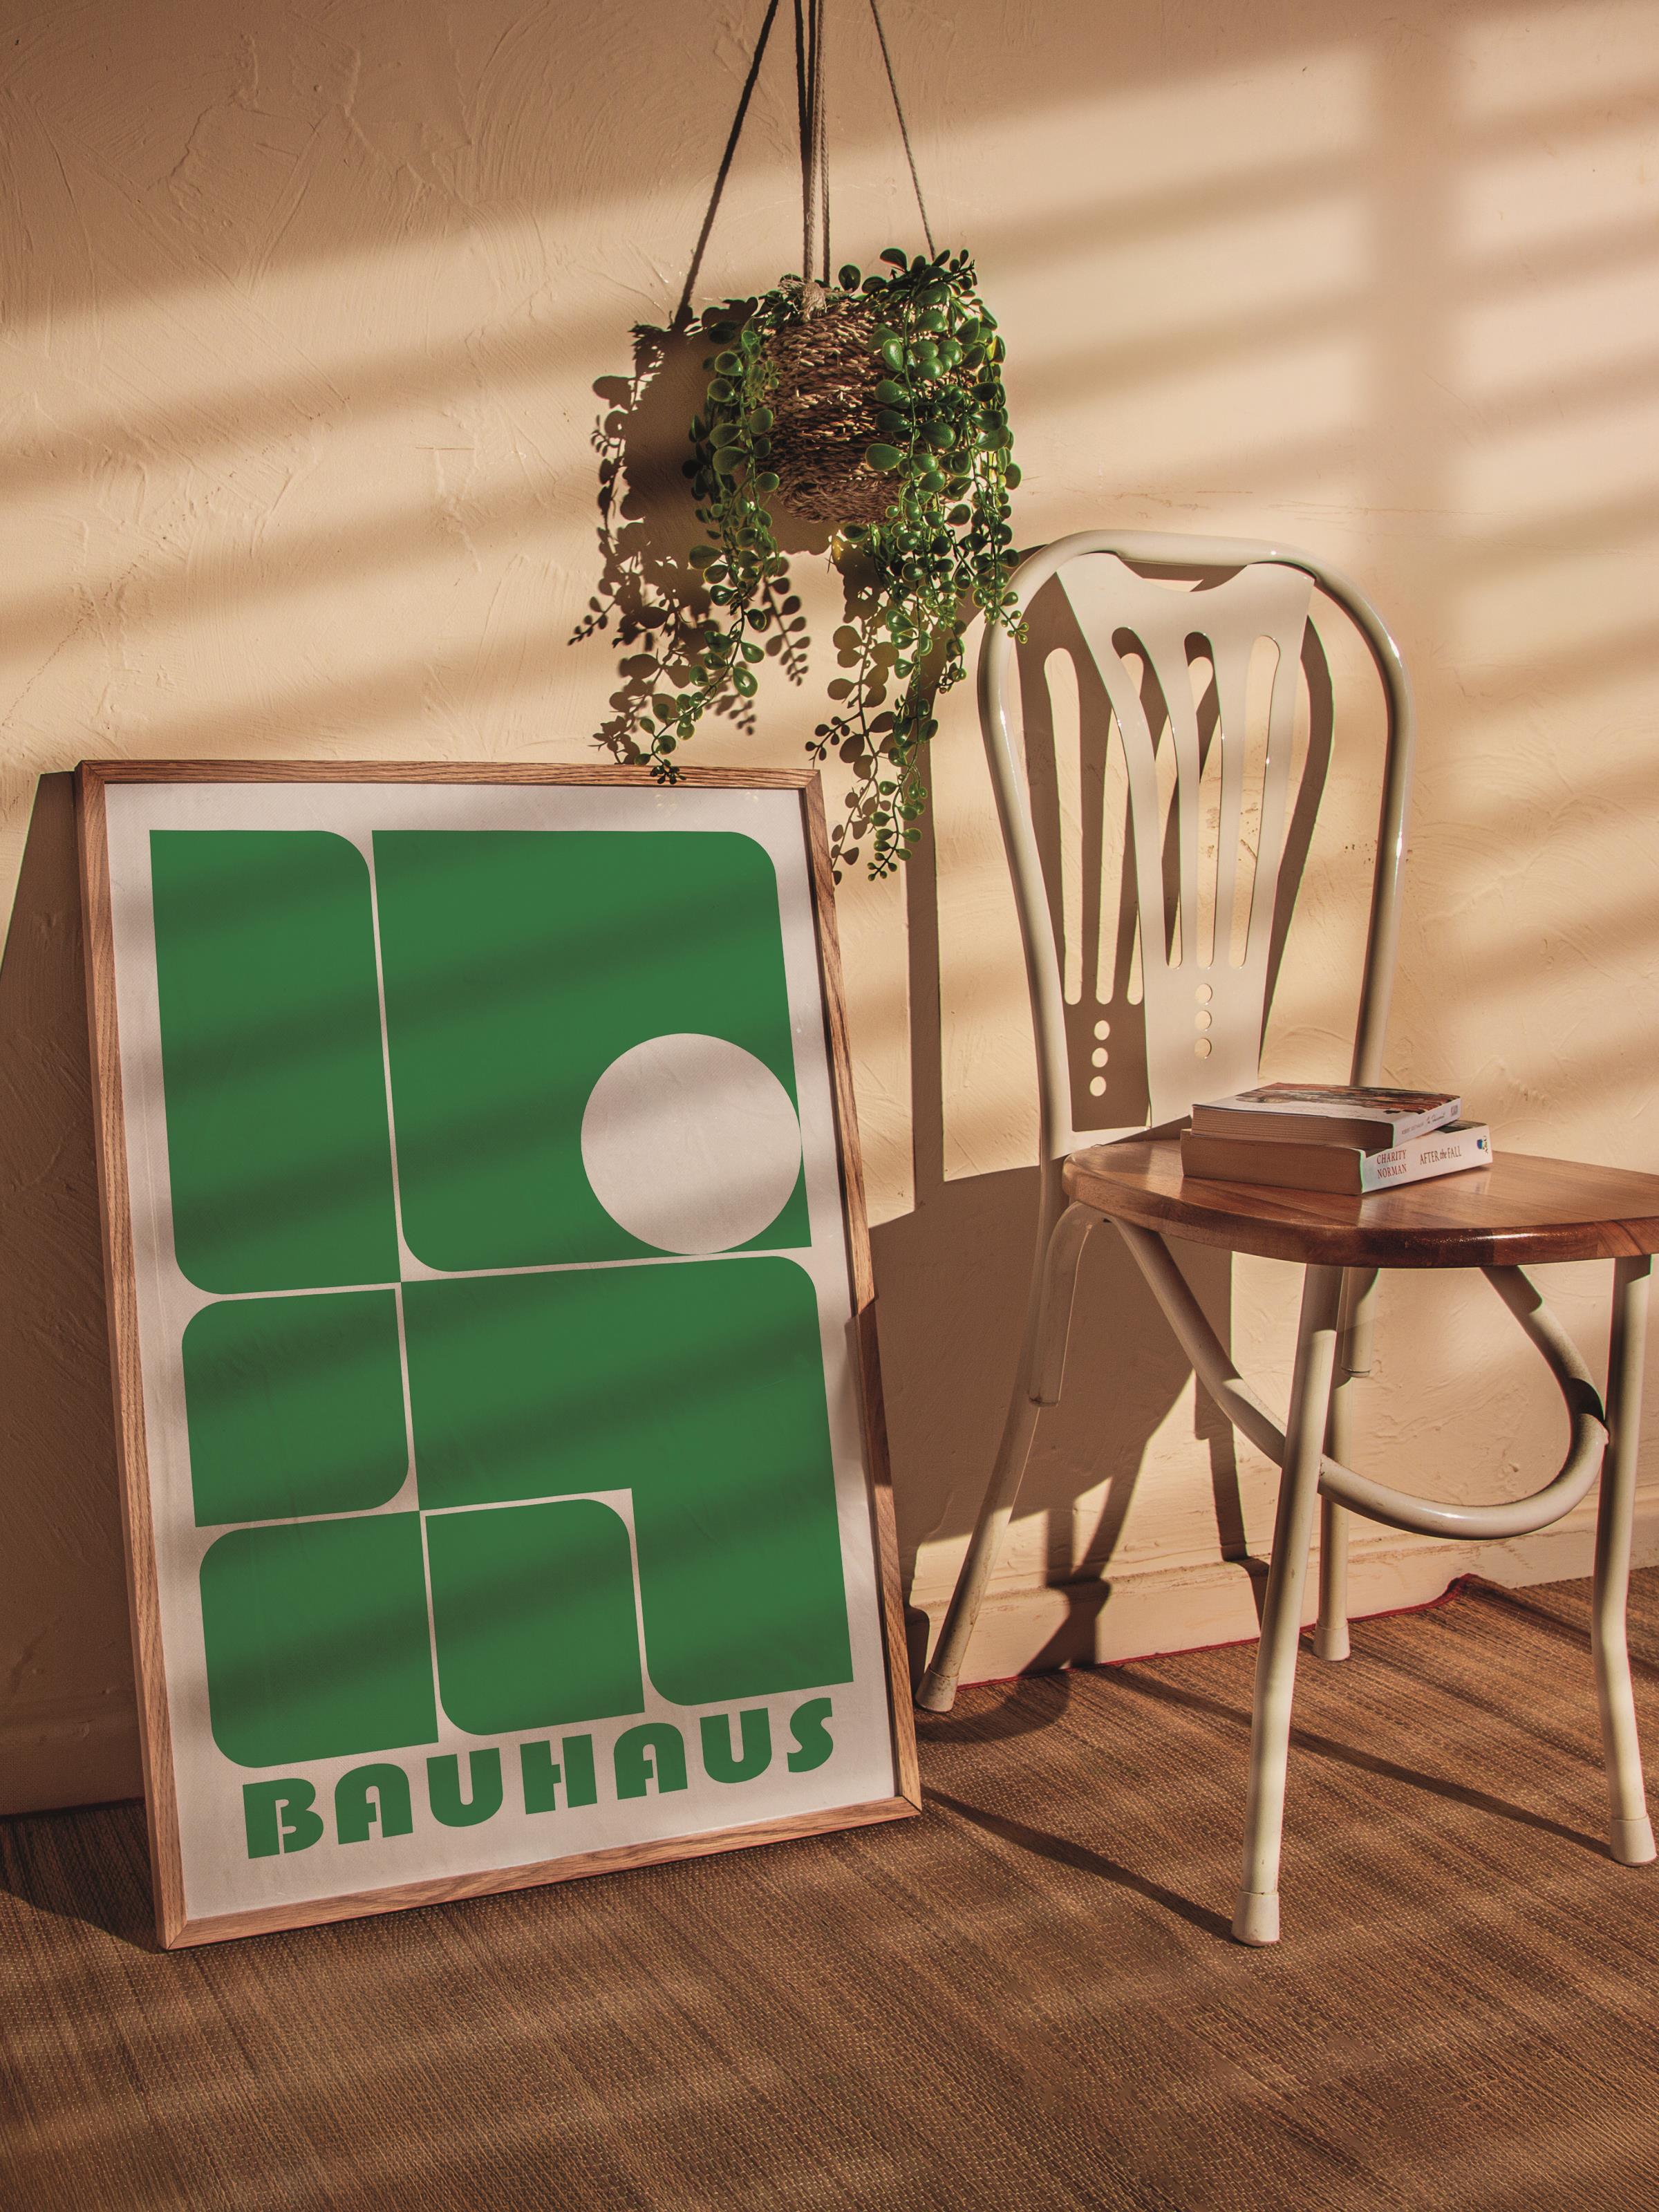 Çerçevesiz Poster, Bauhaus Serisi, Açık Yeşil Duvar Posteri, Duvar Dekoru, HD Baskı, Kalın Arşivsel Sanat Kağıdı